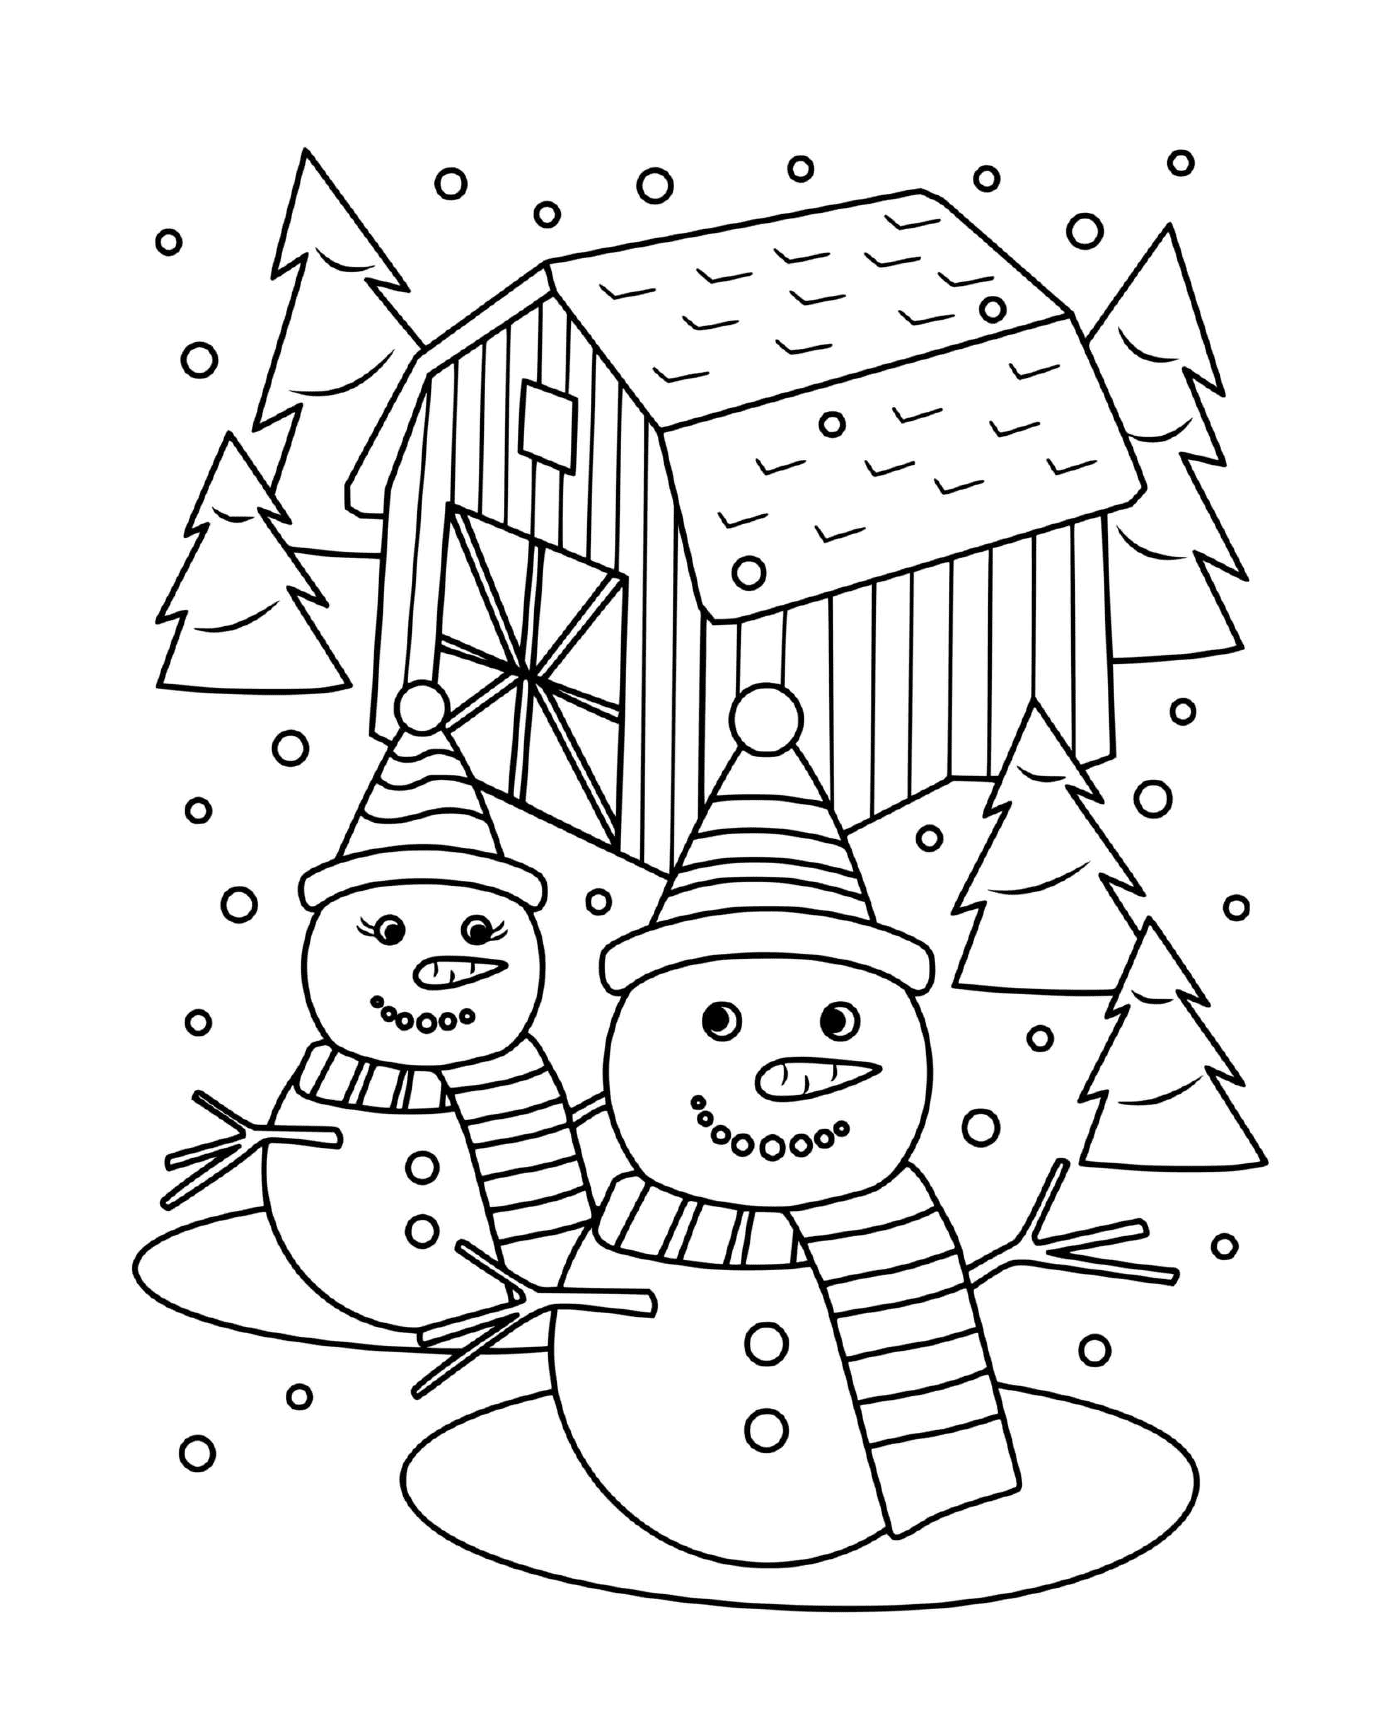  Ein Schneemann und eine Schneefrau umgeben von Tannen 